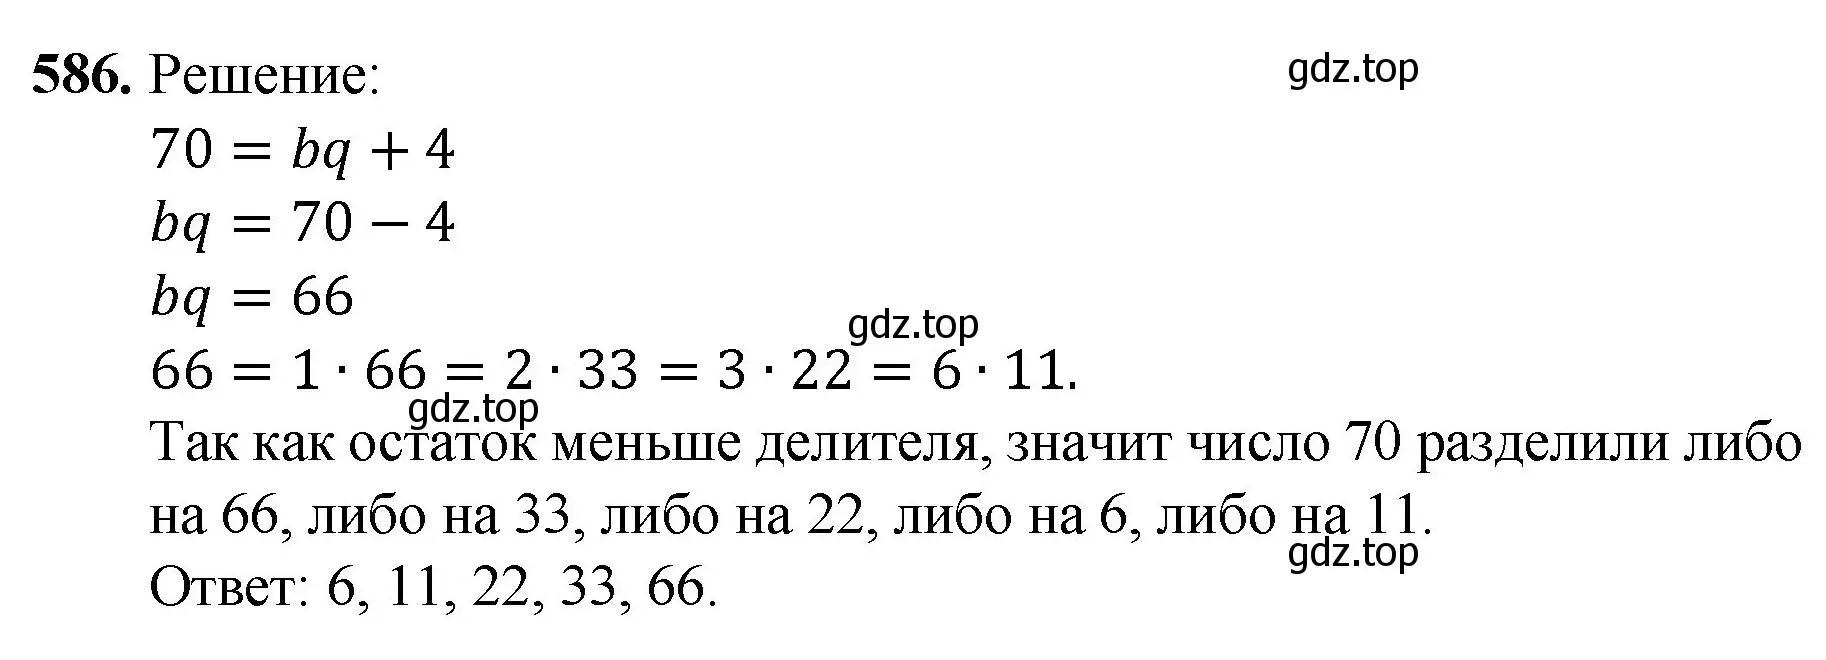 Решение номер 586 (страница 141) гдз по математике 5 класс Мерзляк, Полонский, учебник